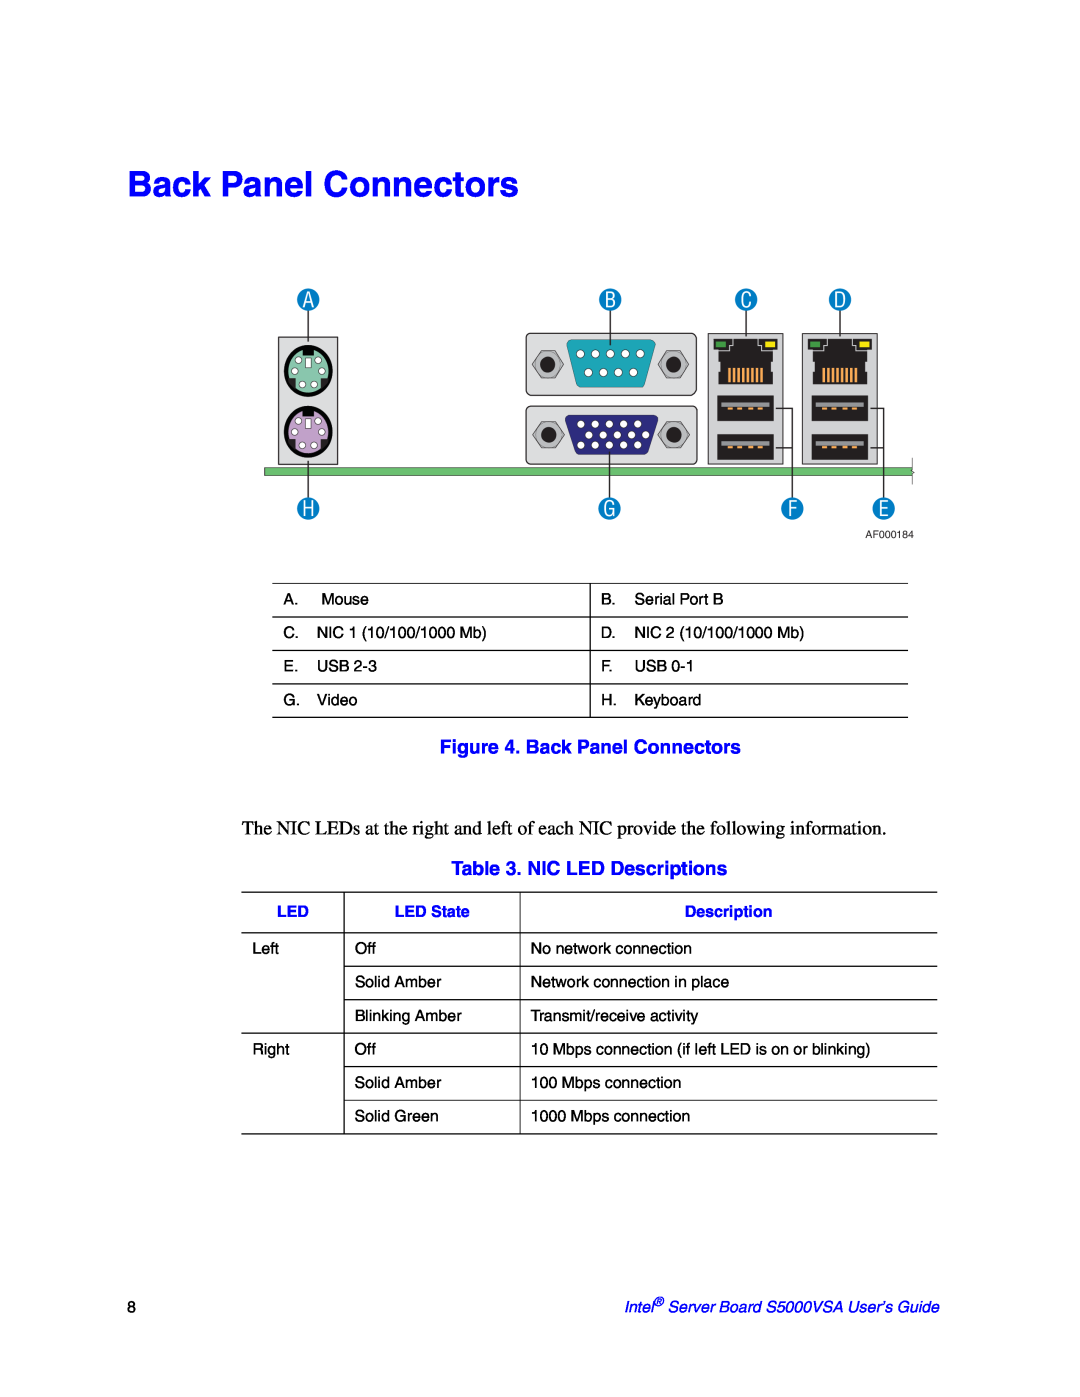 Intel S5000VSA manual Back Panel Connectors, Abc D, NIC LED Descriptions 